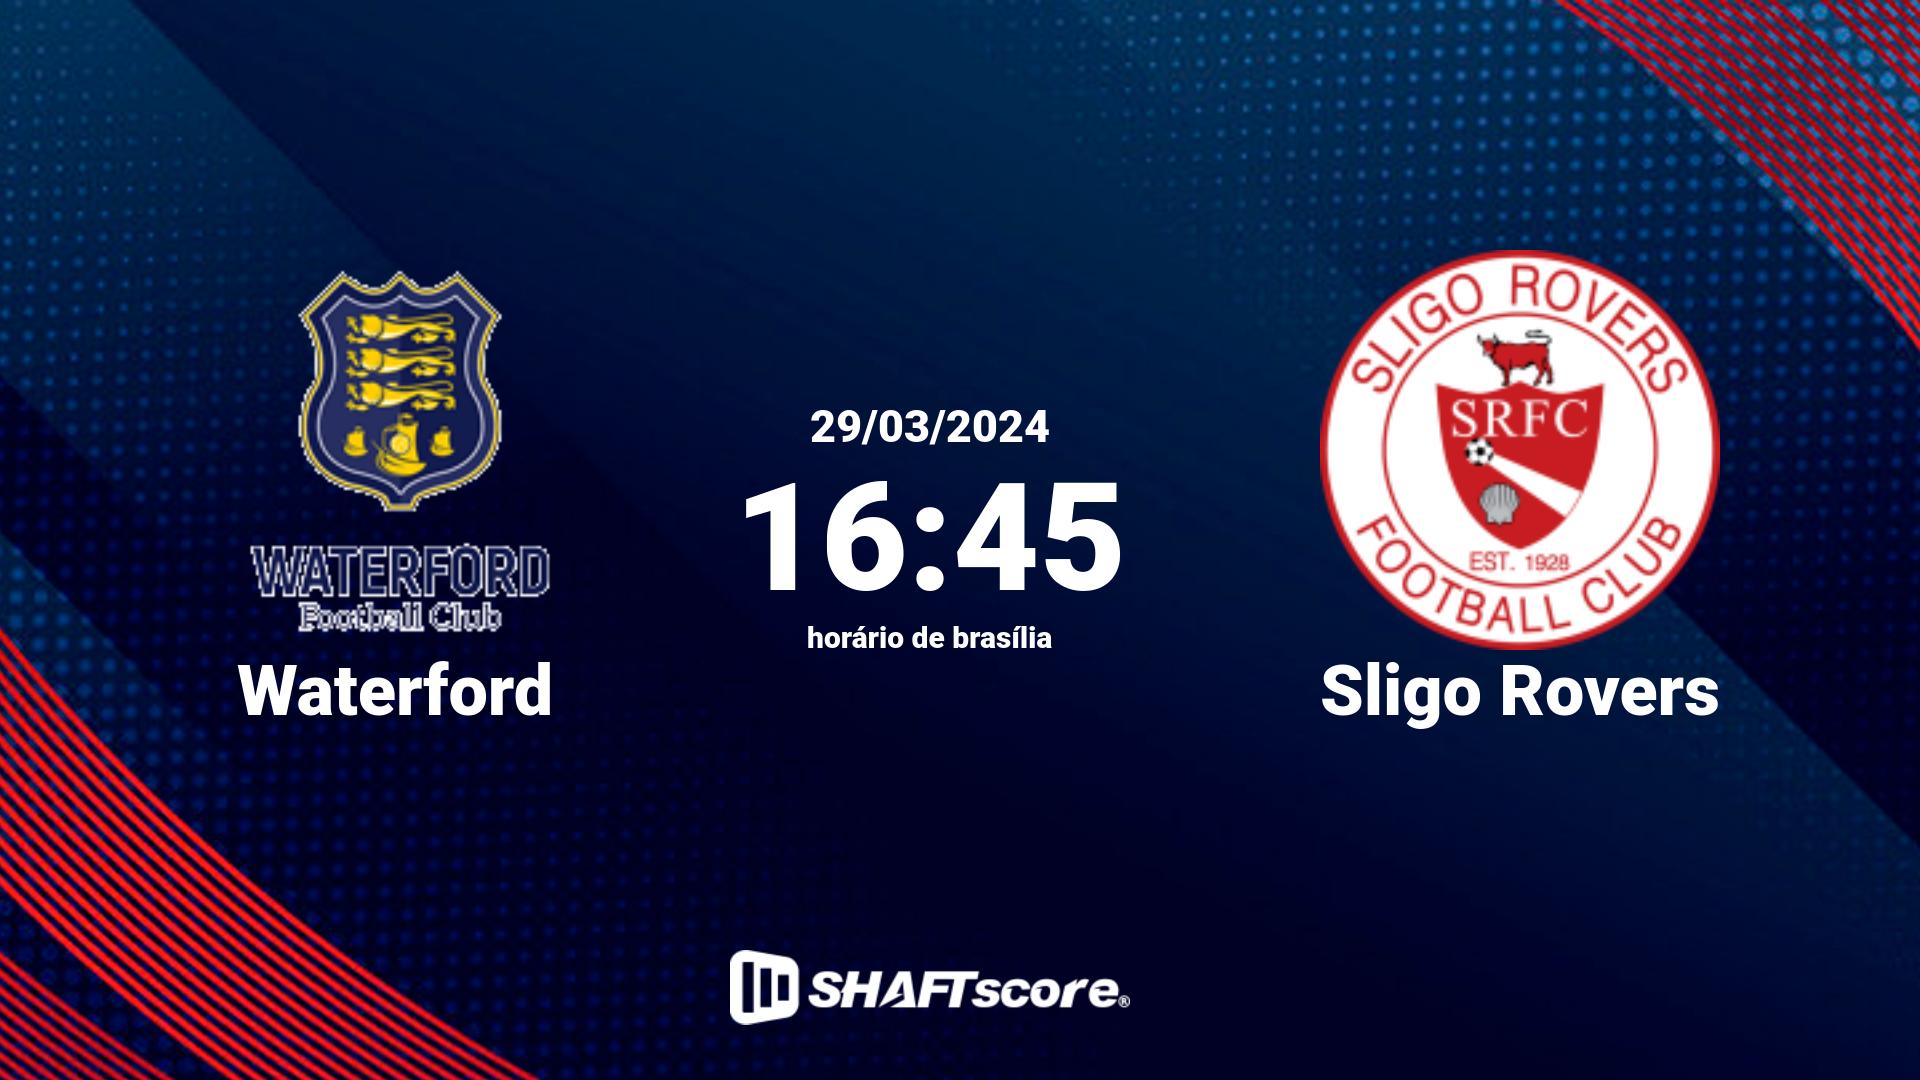 Estatísticas do jogo Waterford vs Sligo Rovers 29.03 16:45